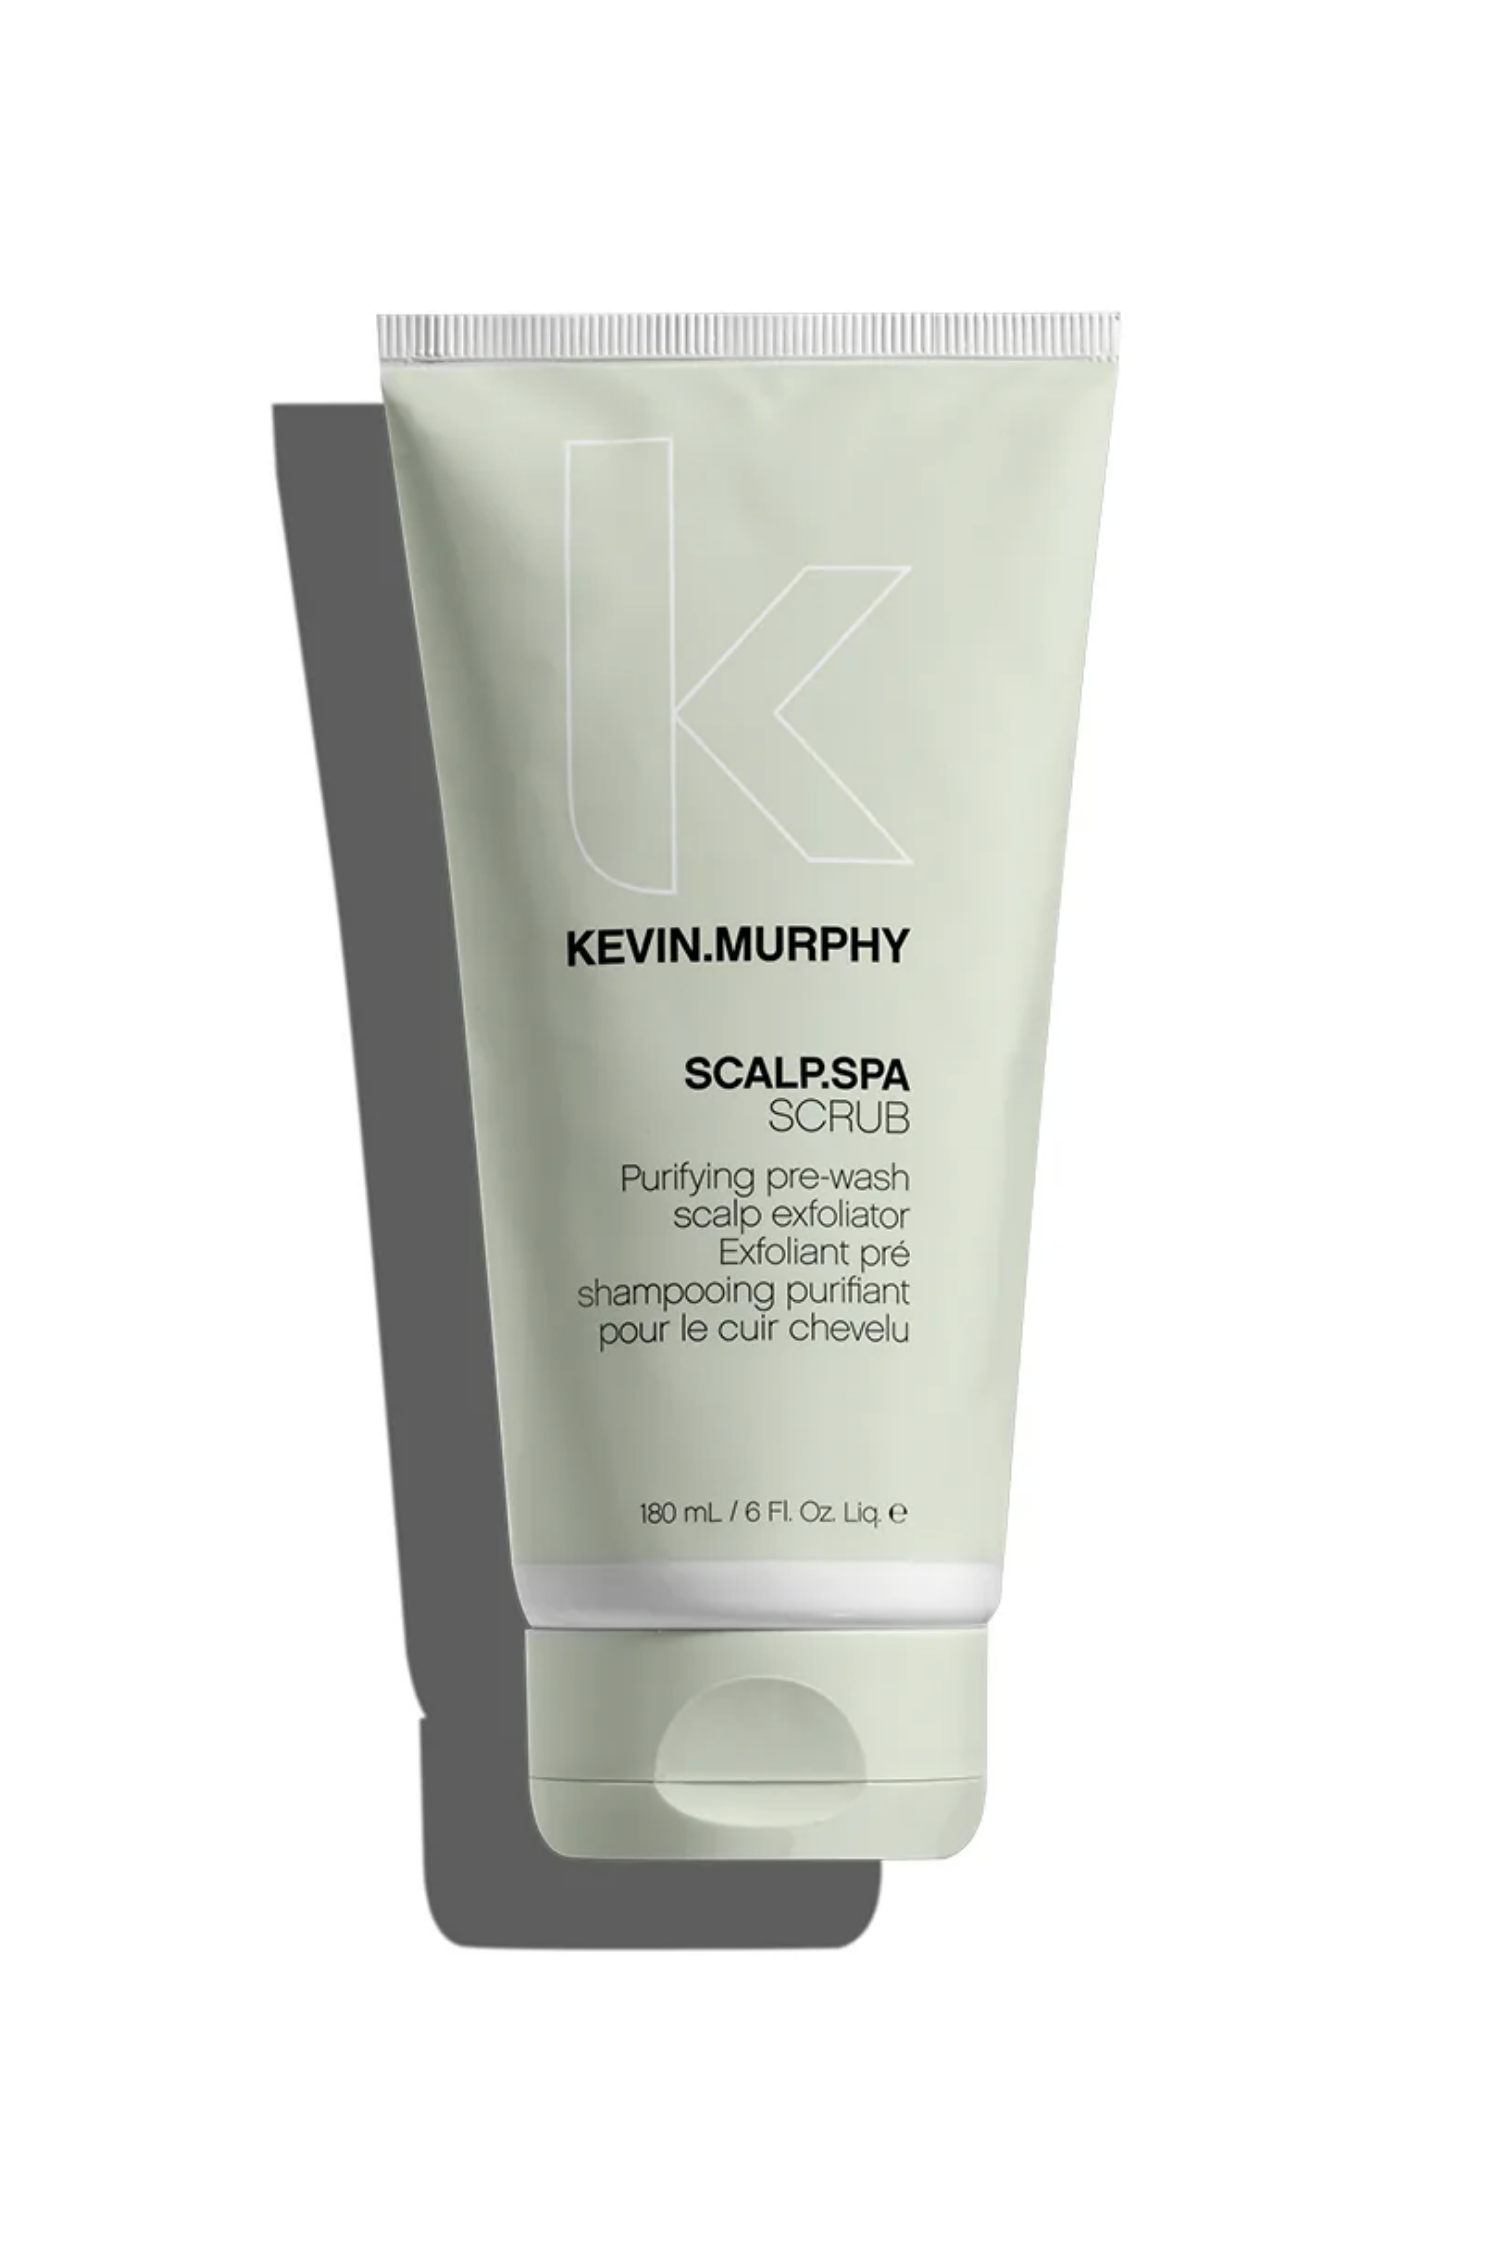 Gommage exfoliant pré shampooing purifiant pour le cuir chevelu Kevin Murphy Scalp spa scrub - Crème Salon